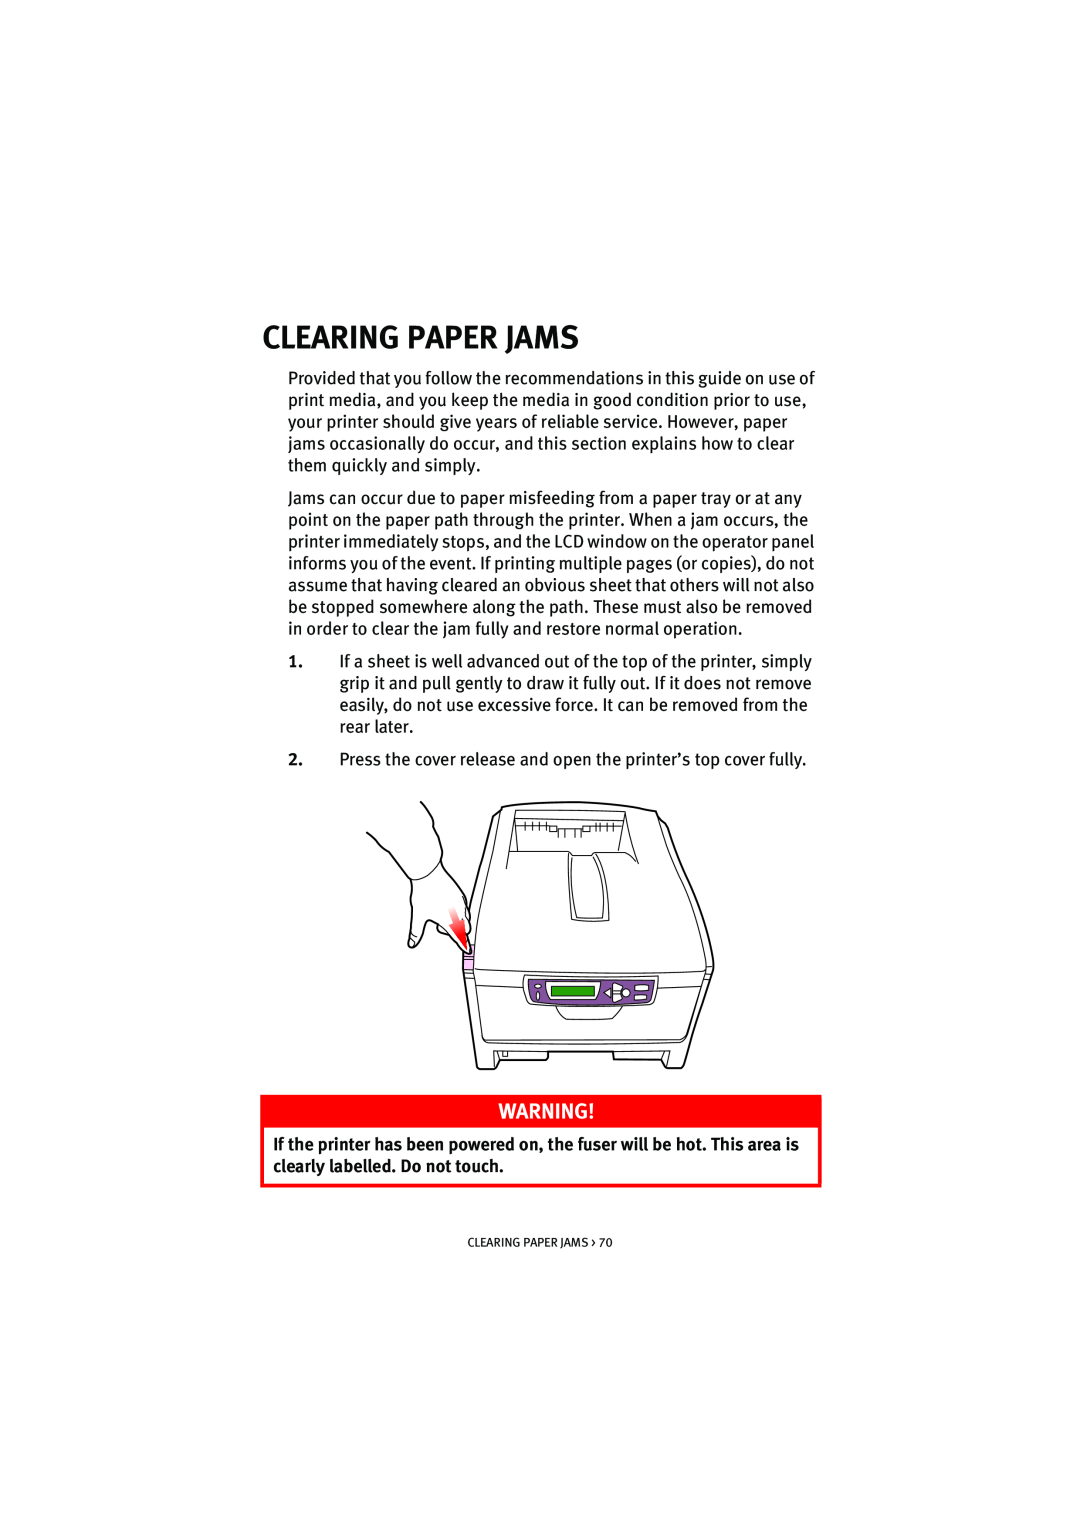 Oki 5200n manual Clearing Paper Jams 